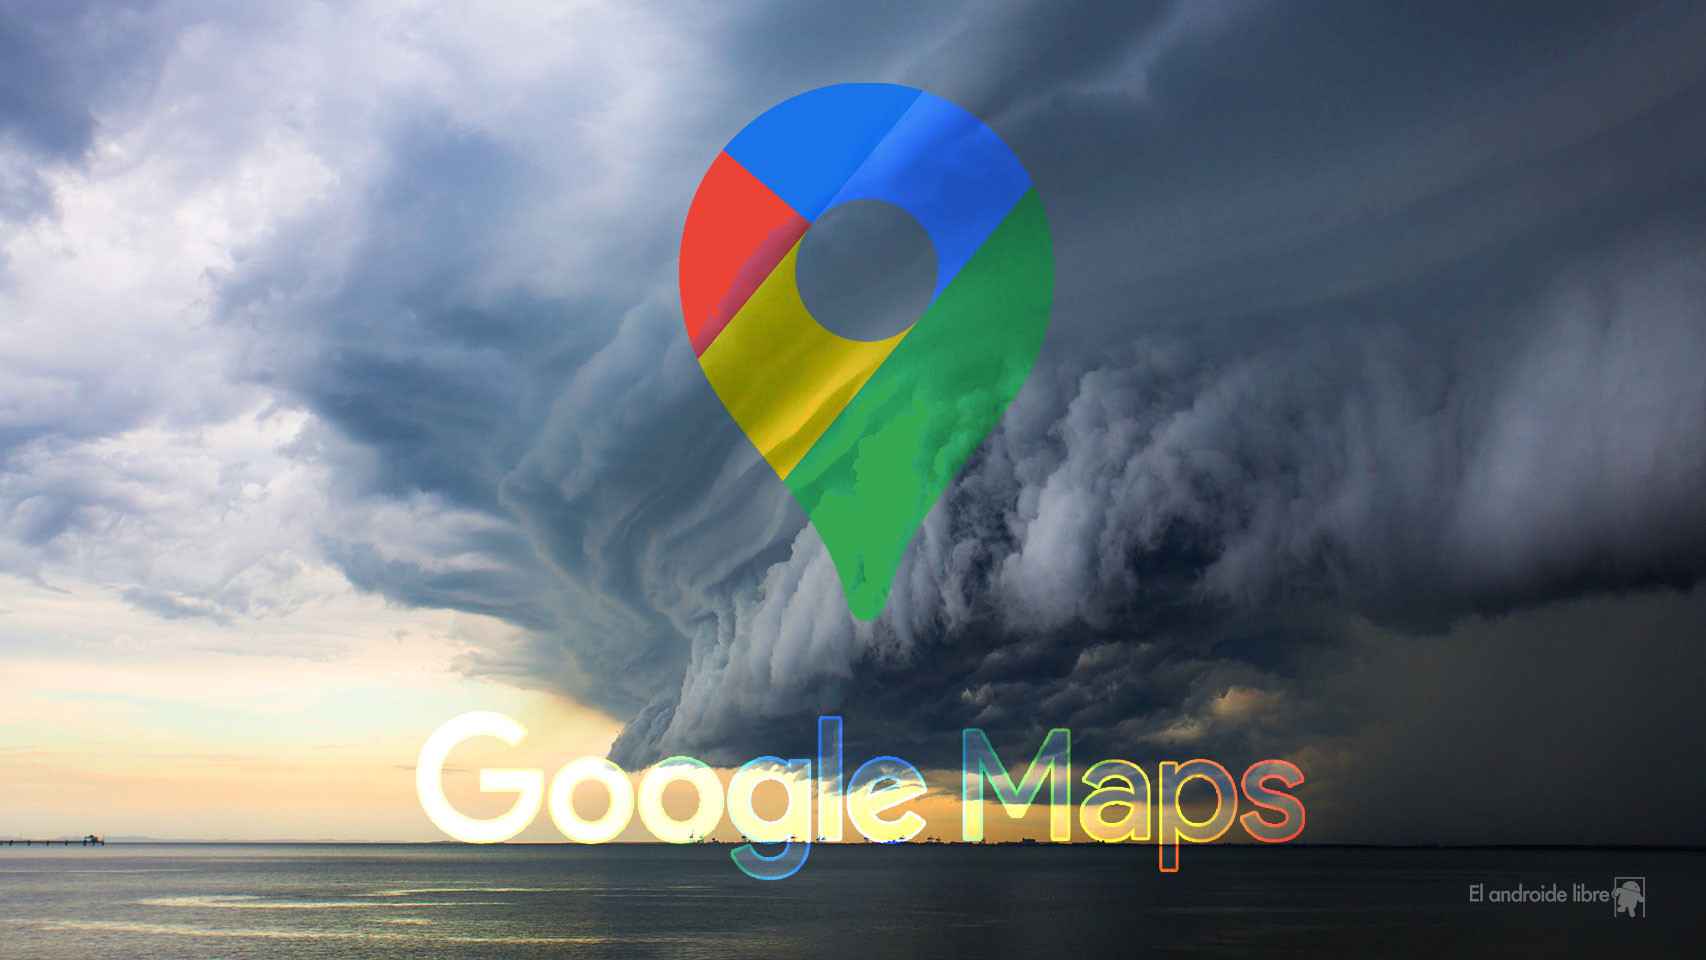 Google Maps incorpora una novedad para conocer el estado del tiempo